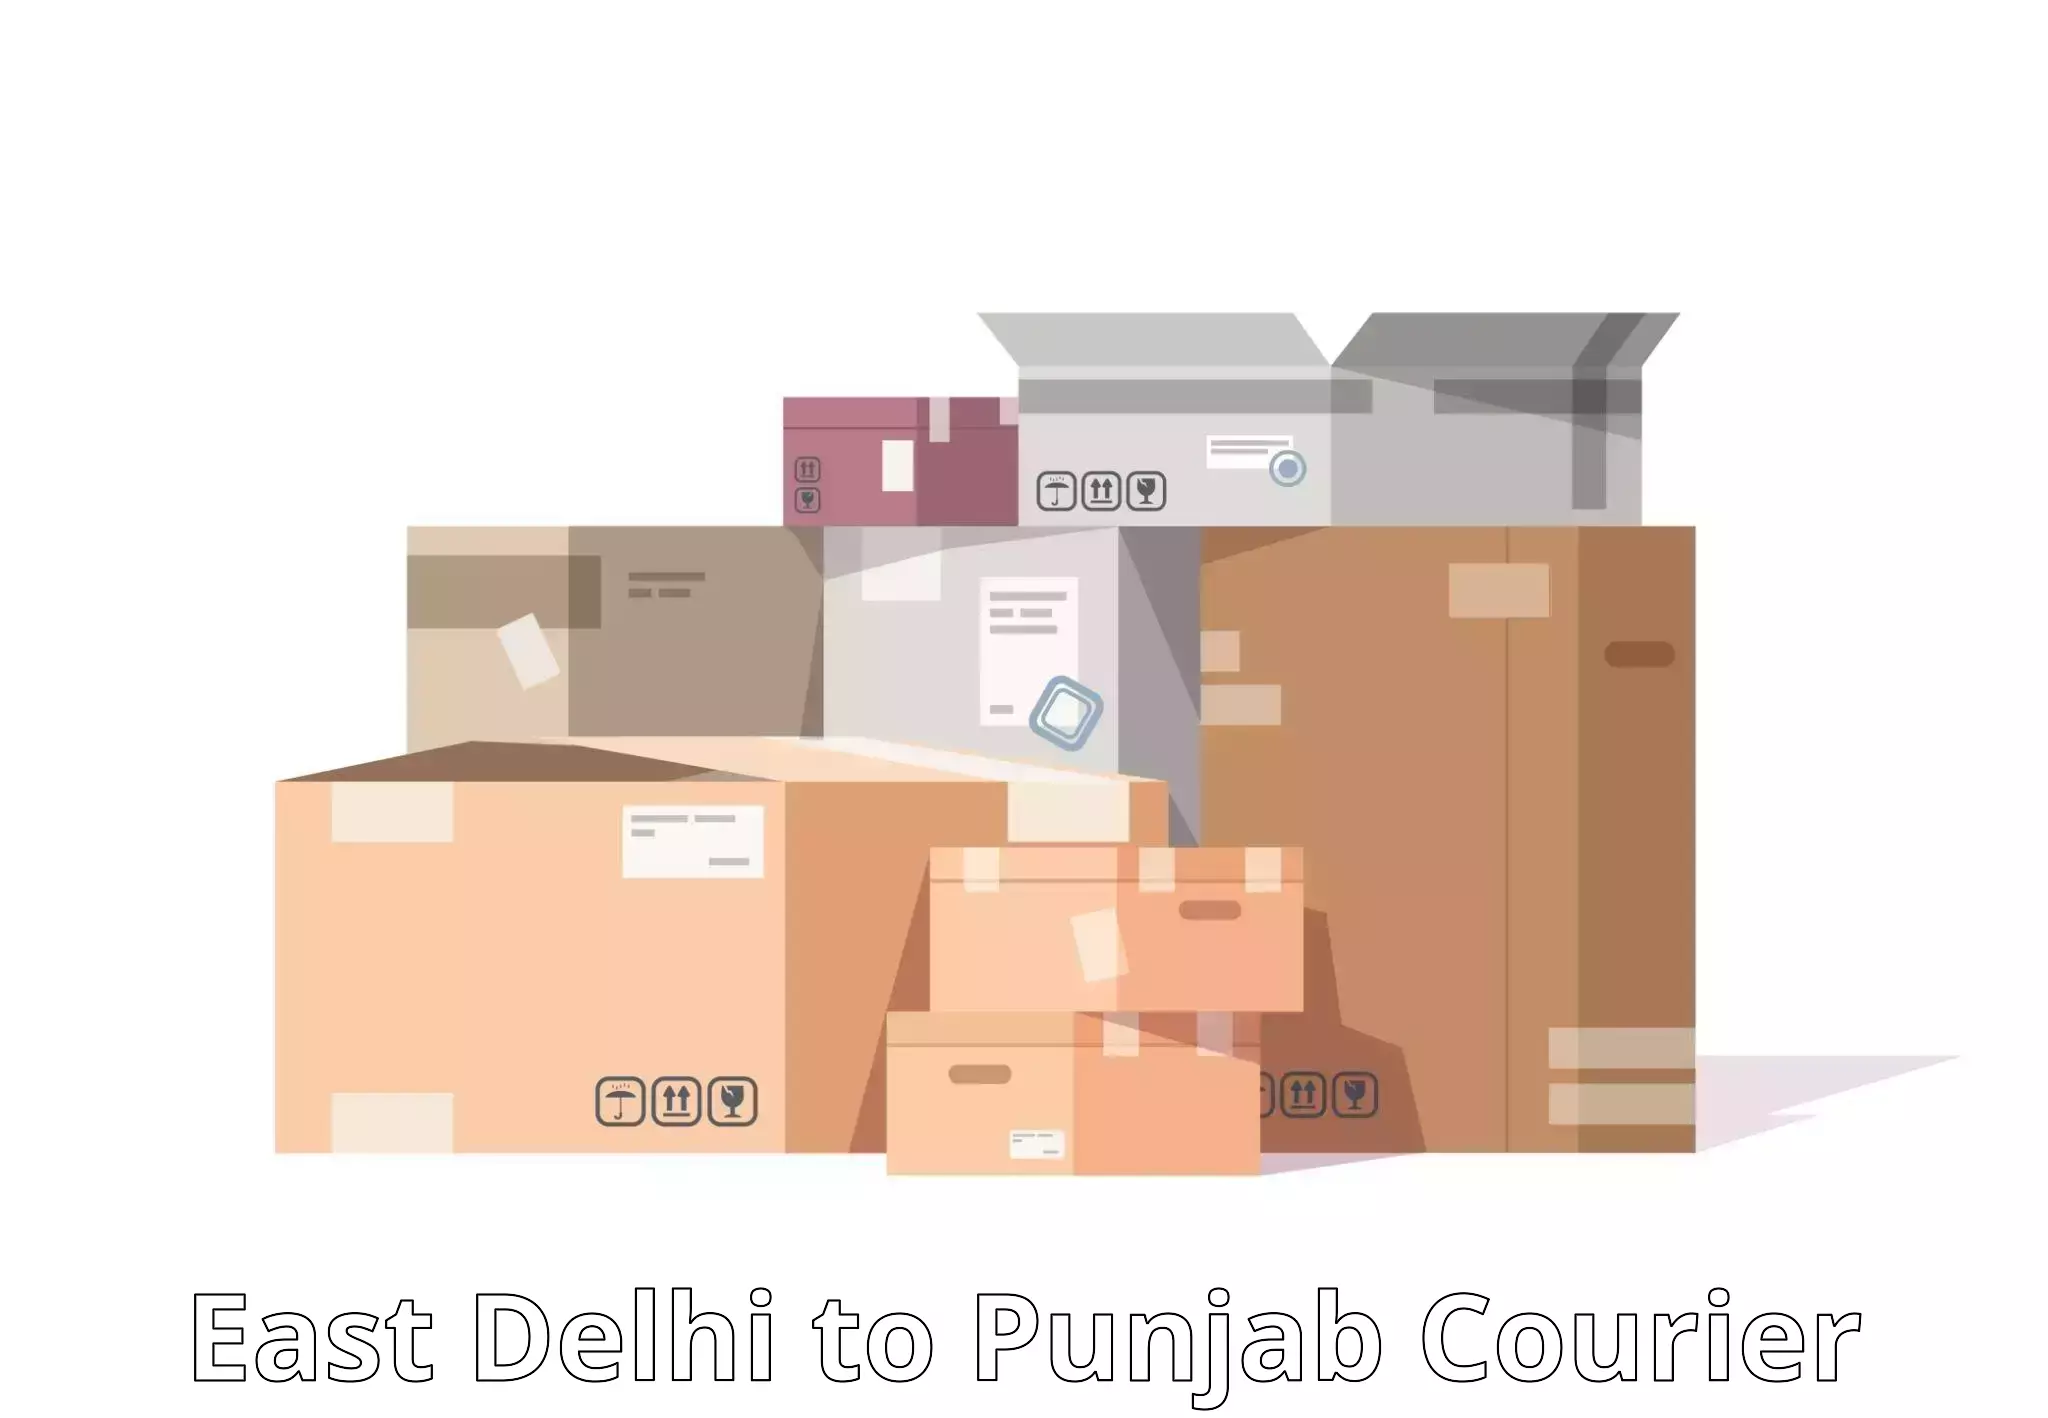 Affordable parcel rates East Delhi to Gurdaspur